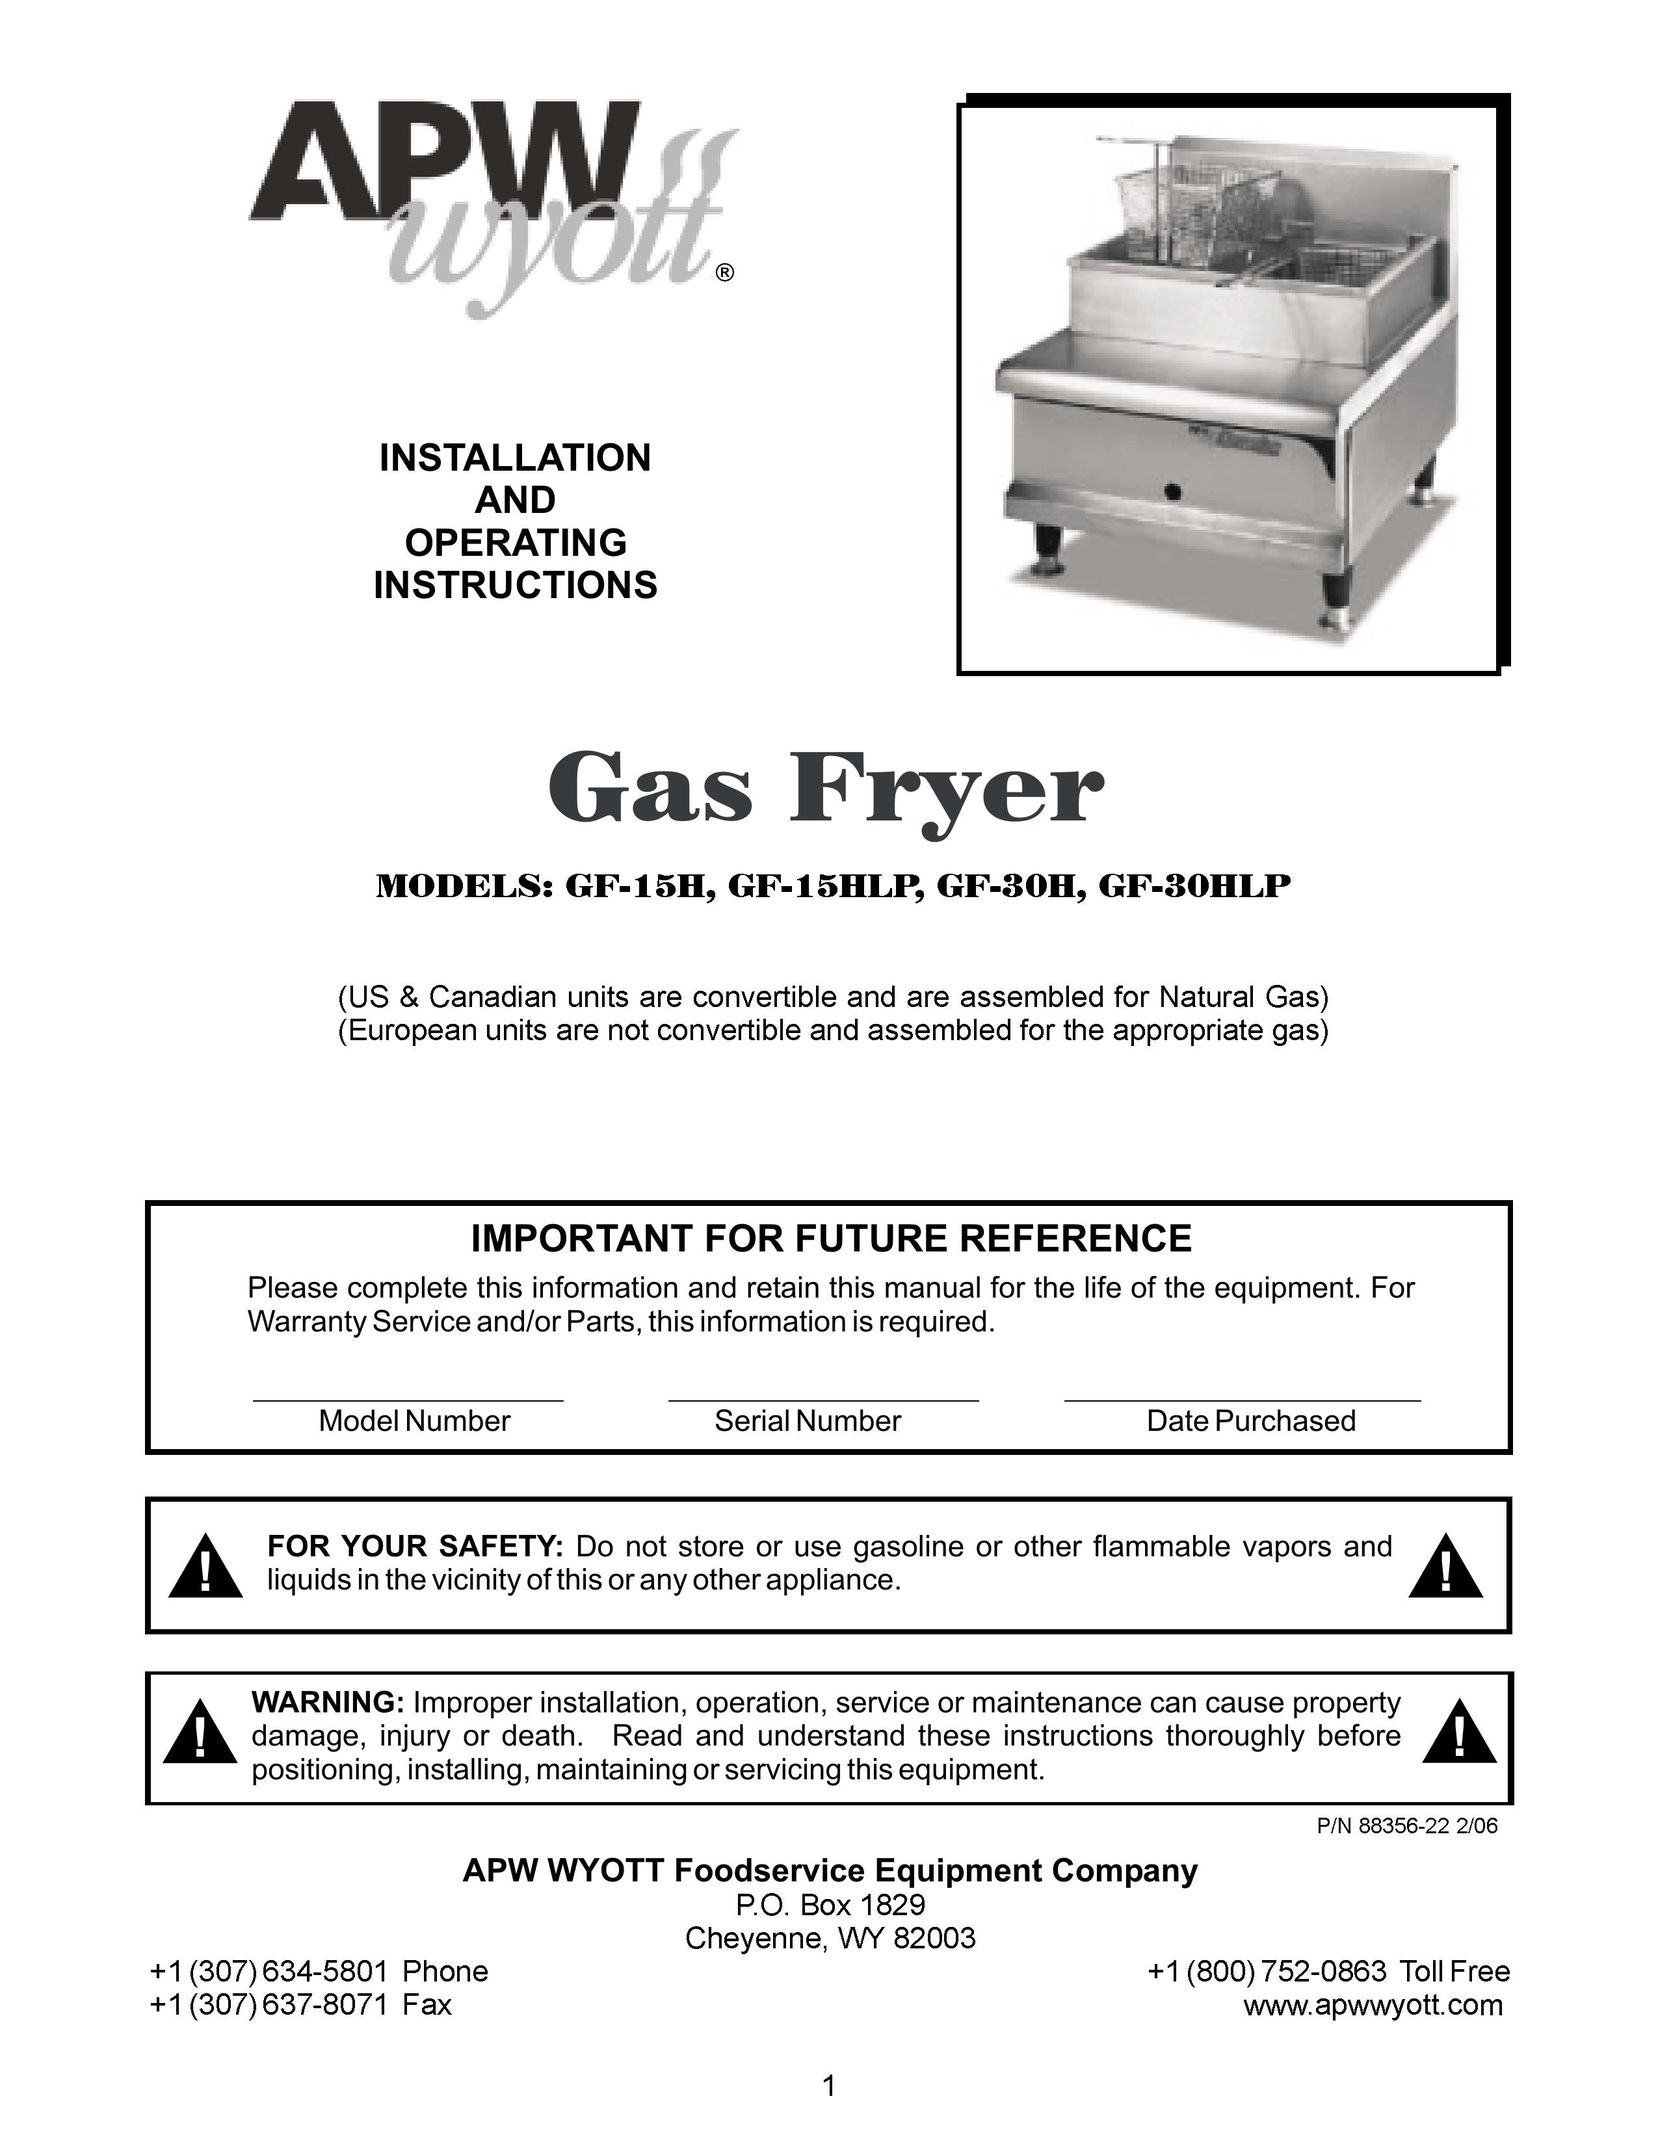 APW Wyott GF-15HLP Fryer User Manual